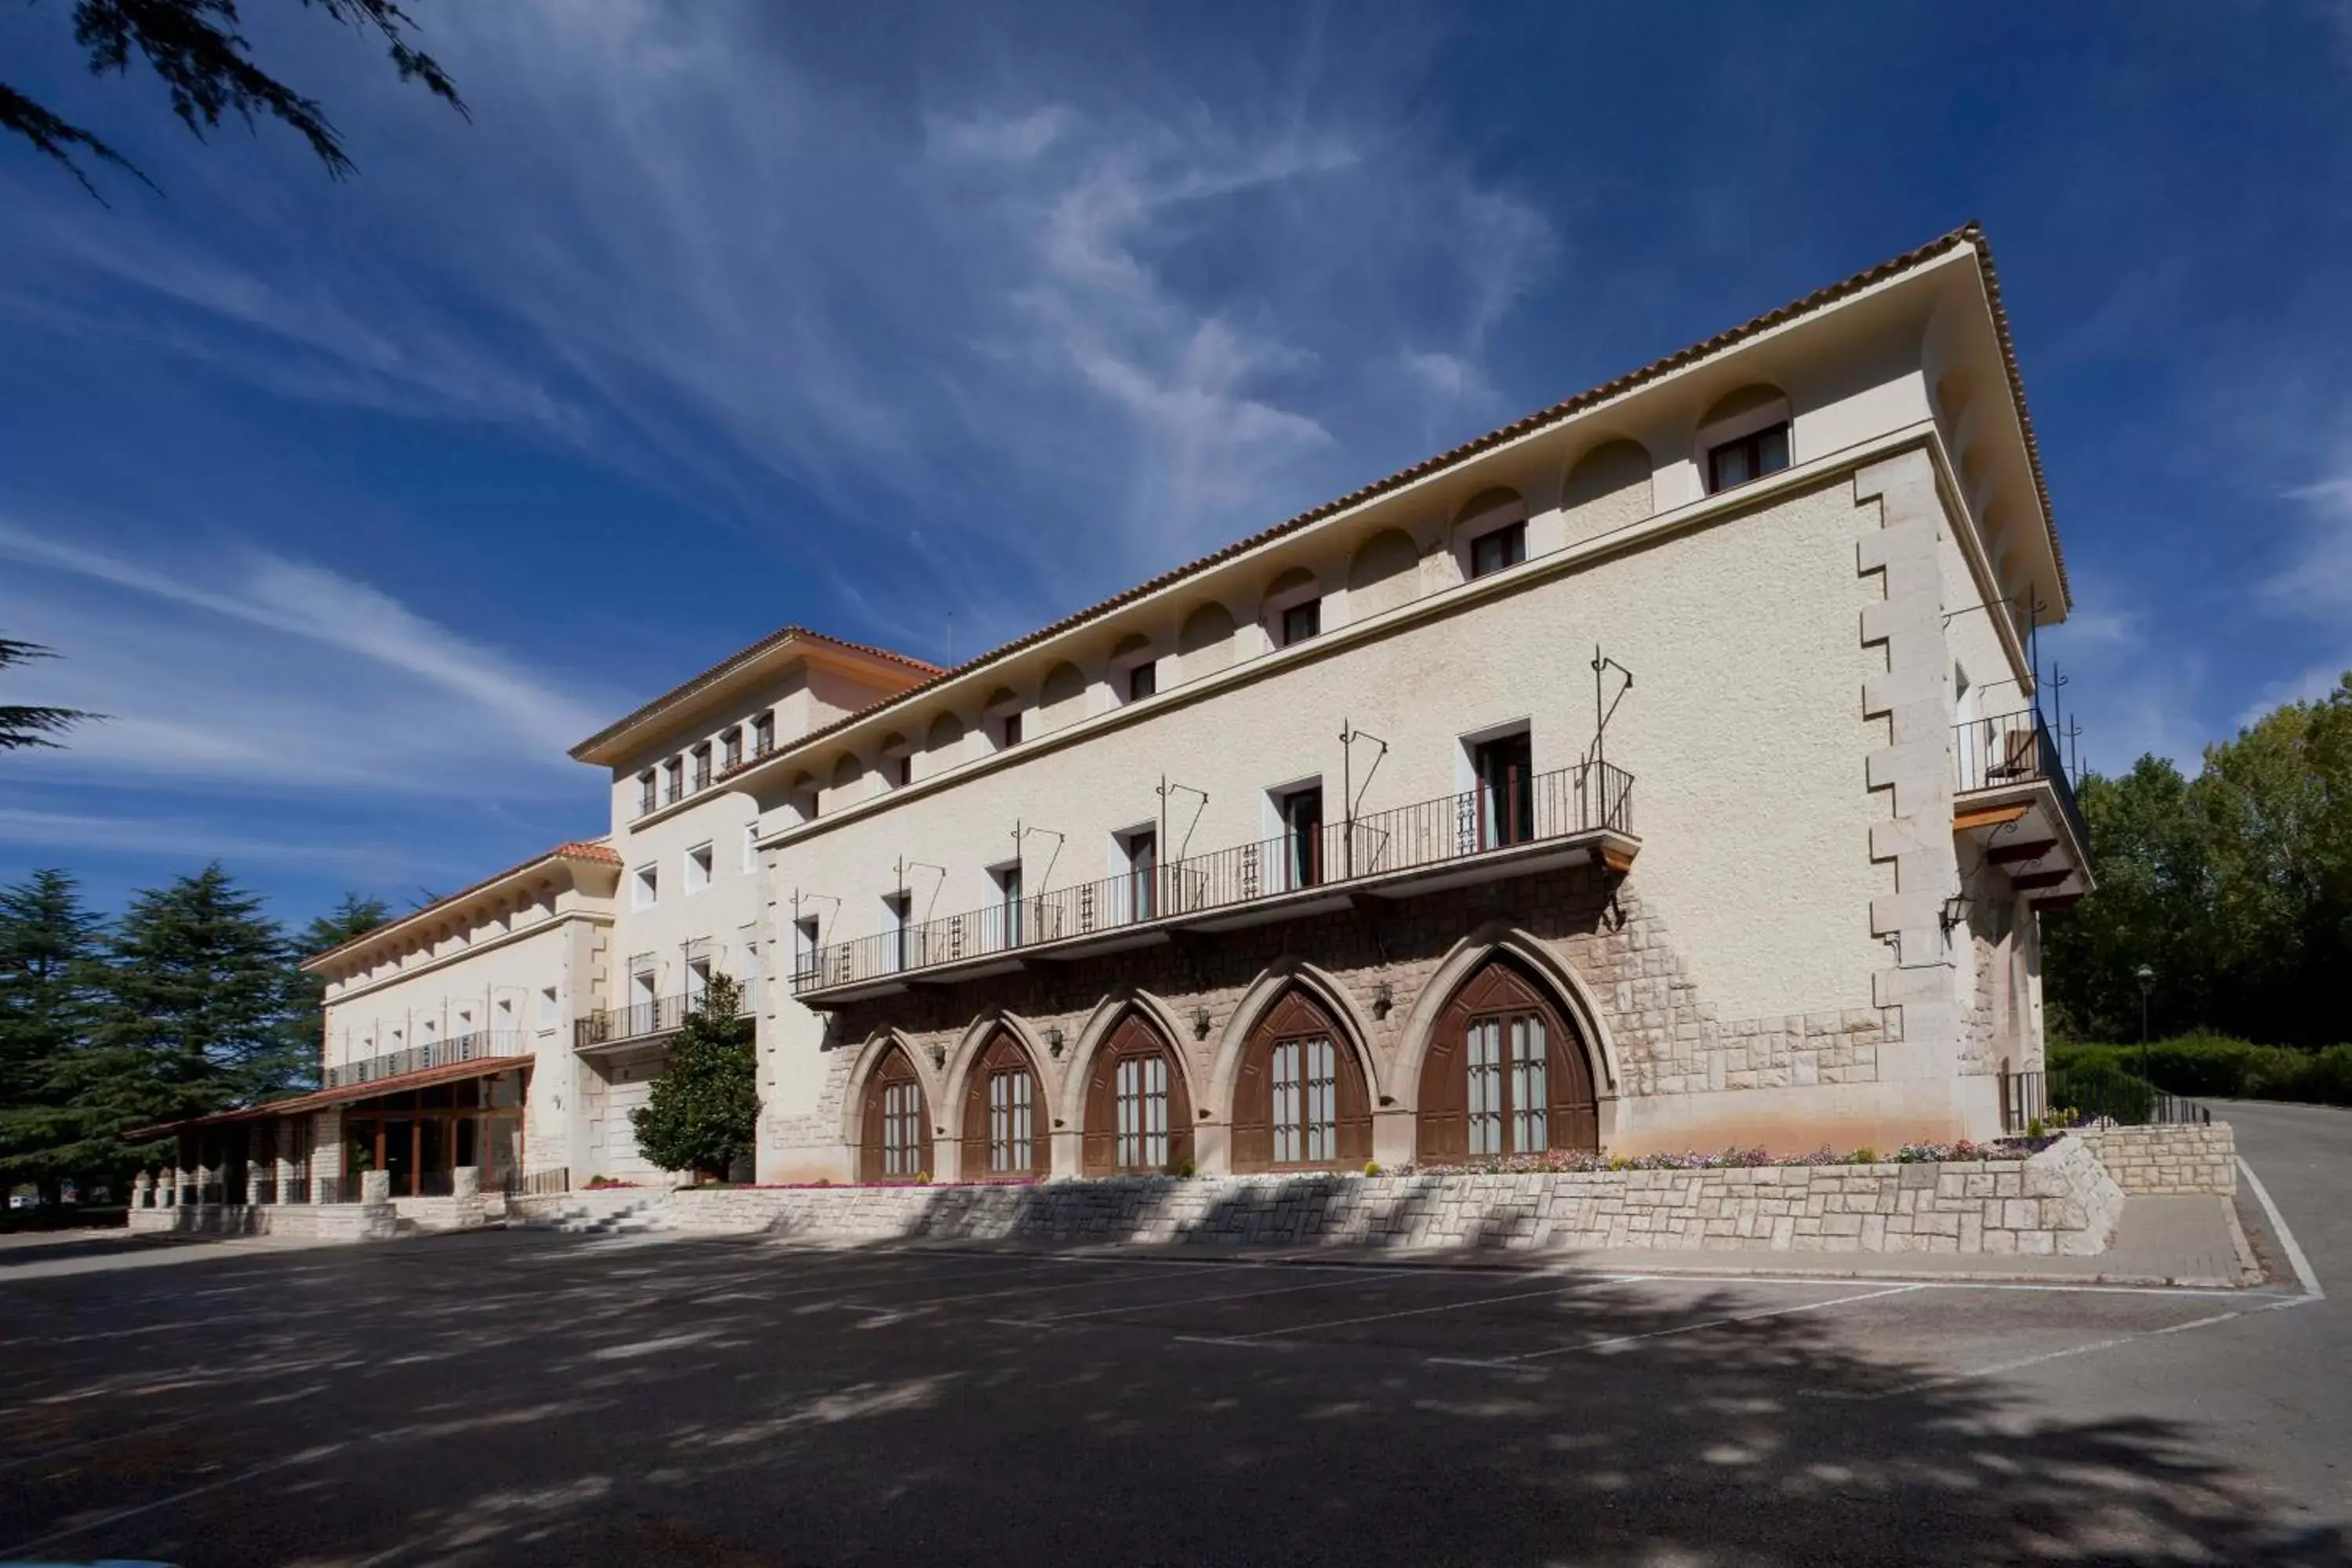 Property building in Parador de Teruel